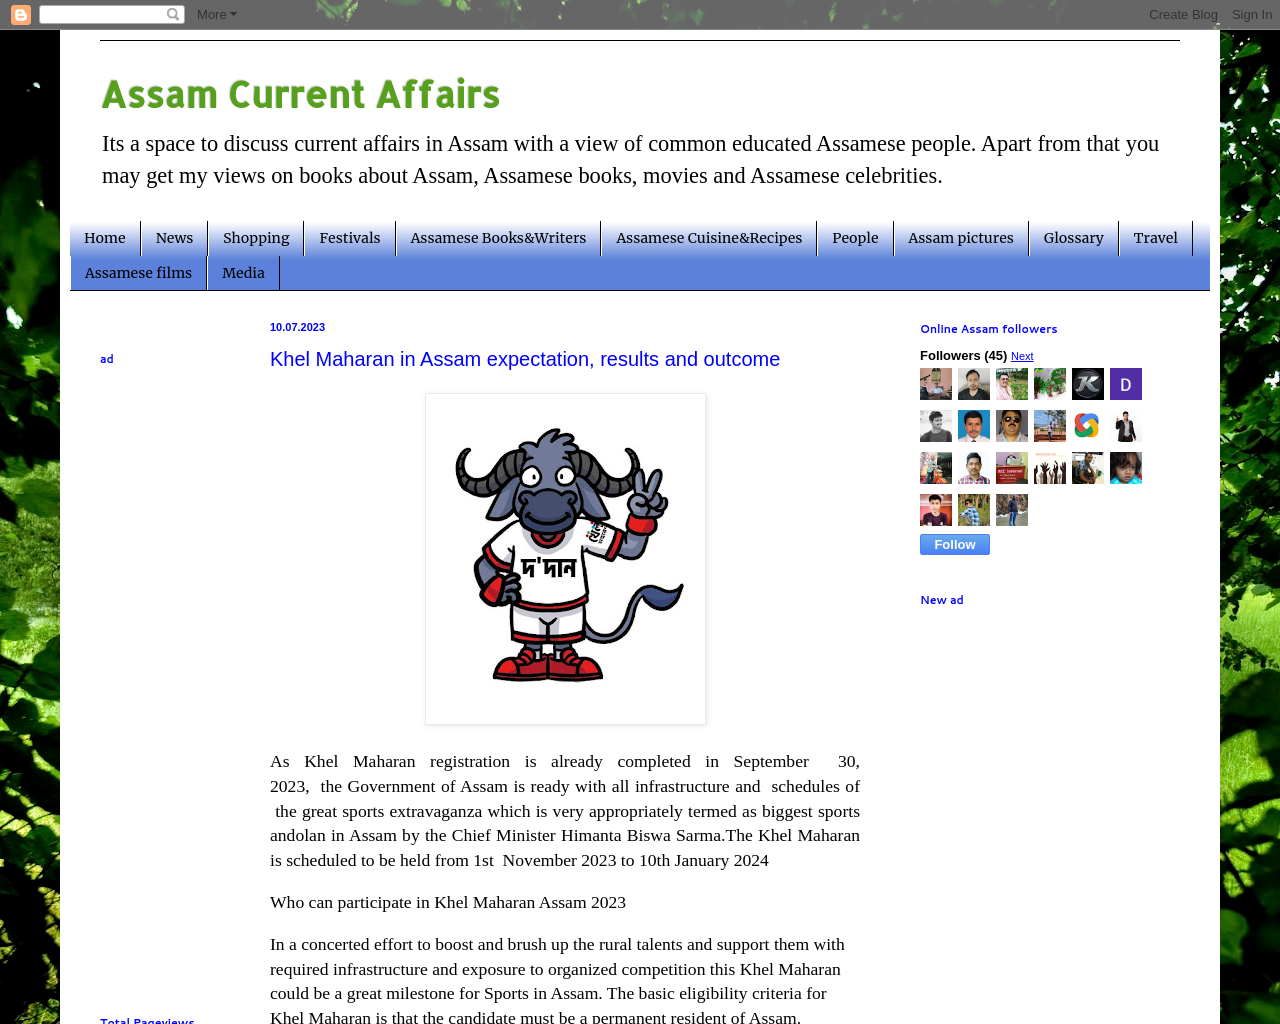 Online Assam